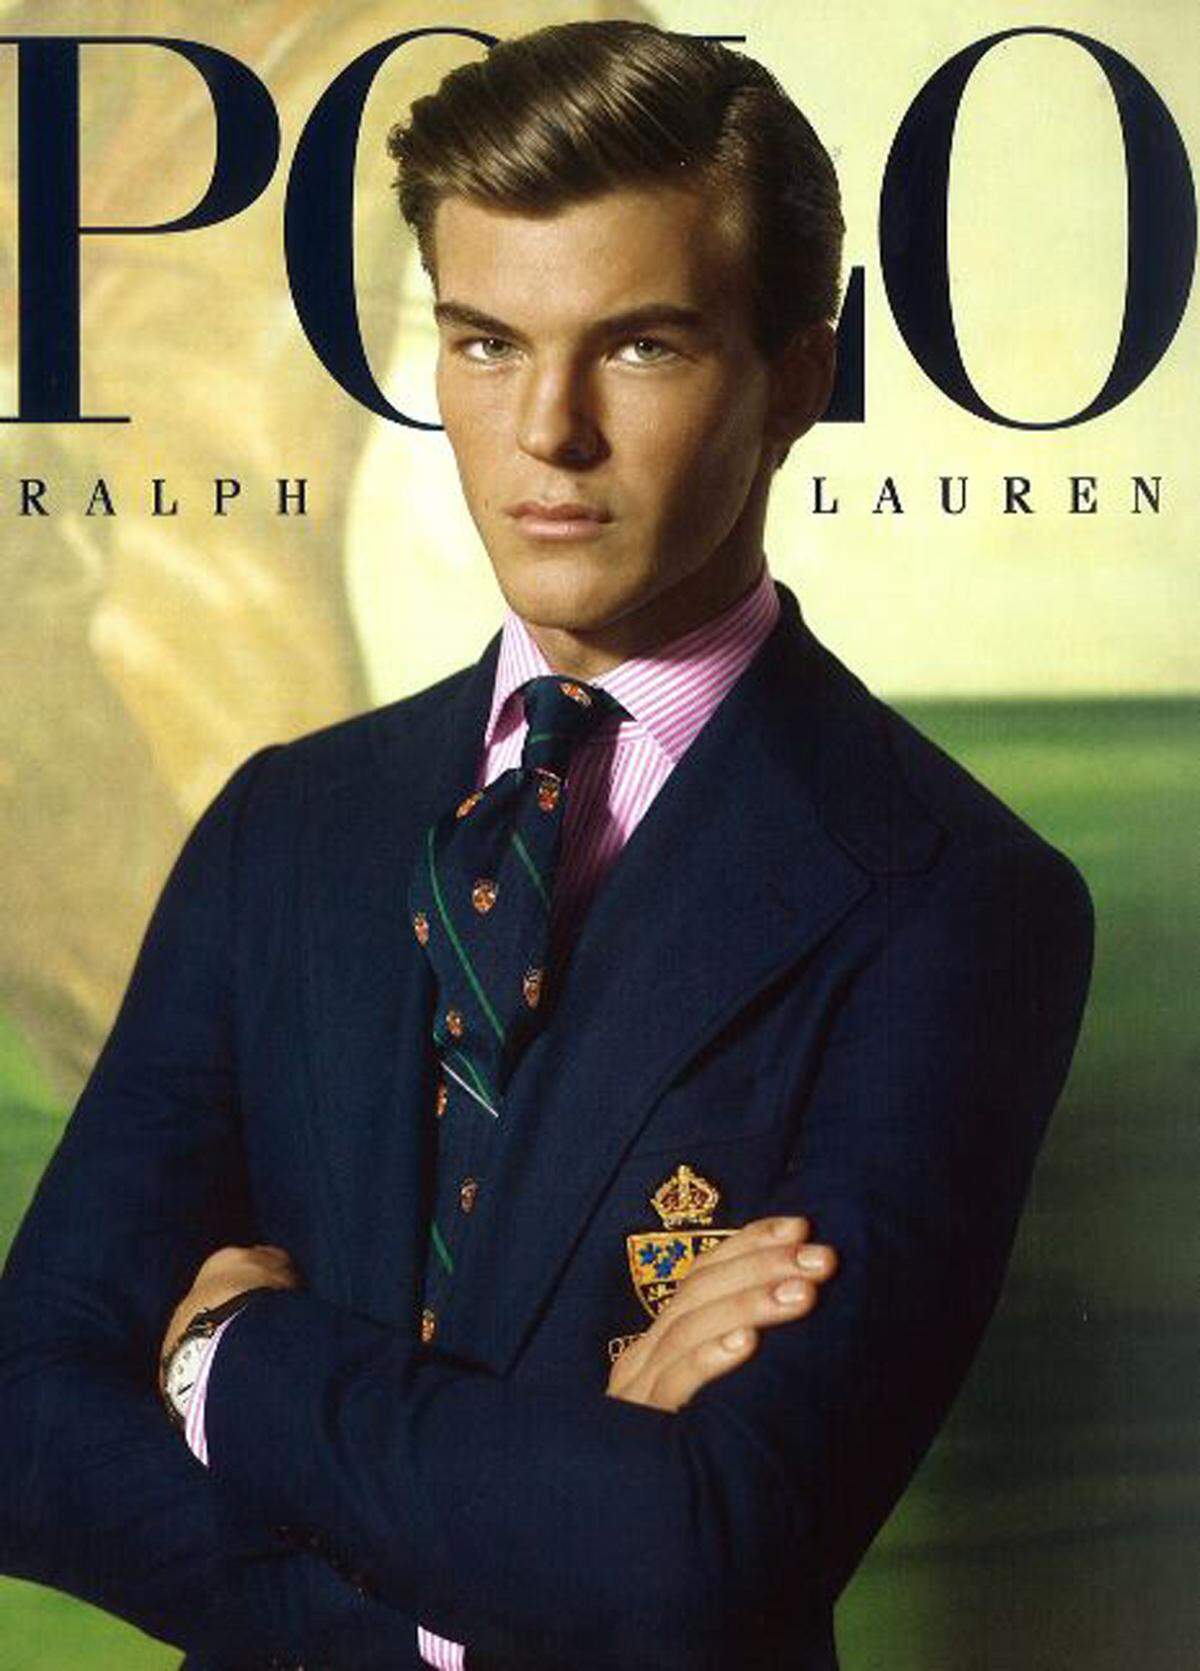 Auf in der Kampagne von Polo Ralph Lauren macht er eine gute Figur.